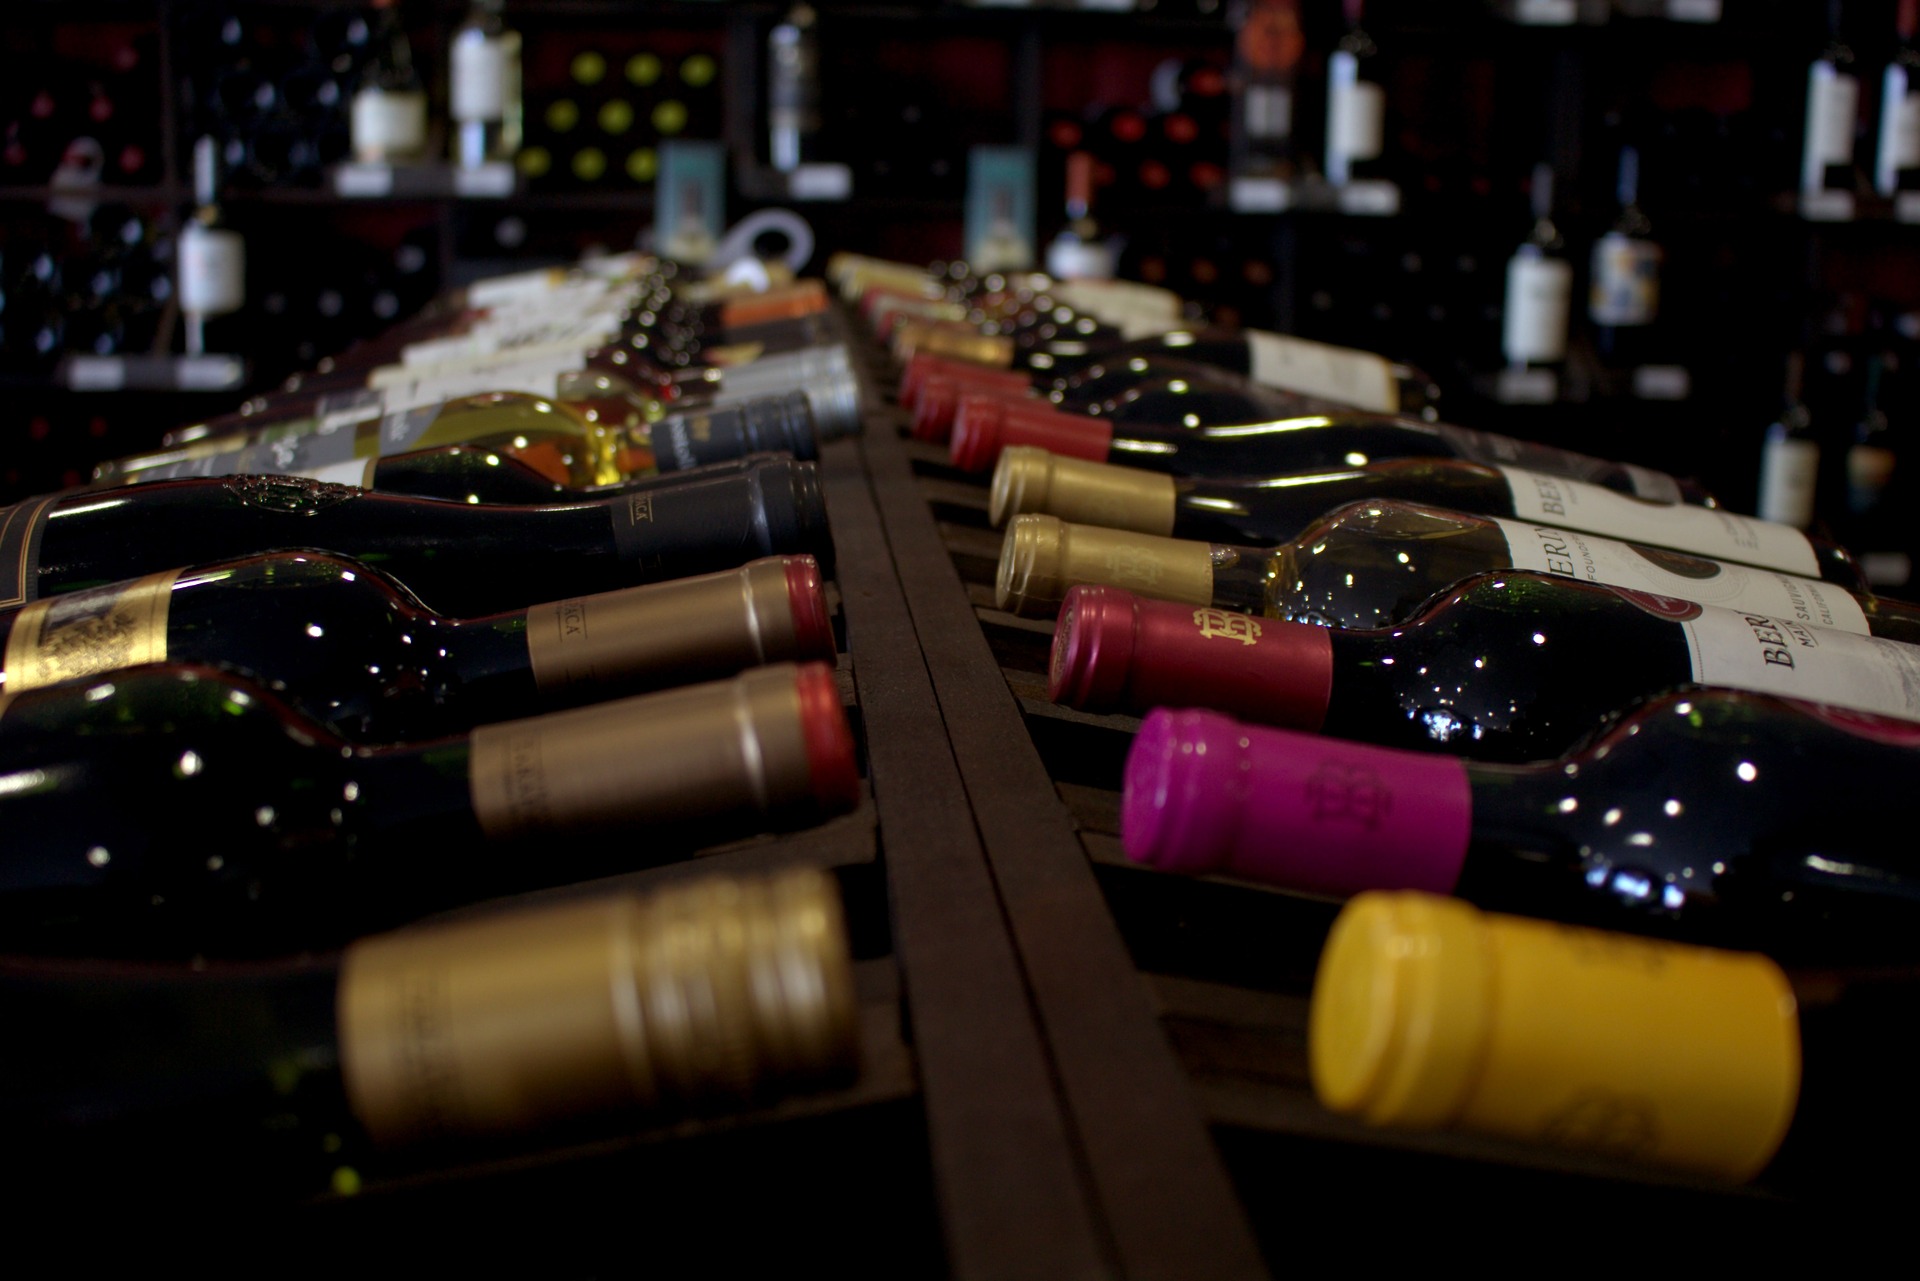 ¿Cómo se guardan las botellas de vino, en posición vertical u horizontal?